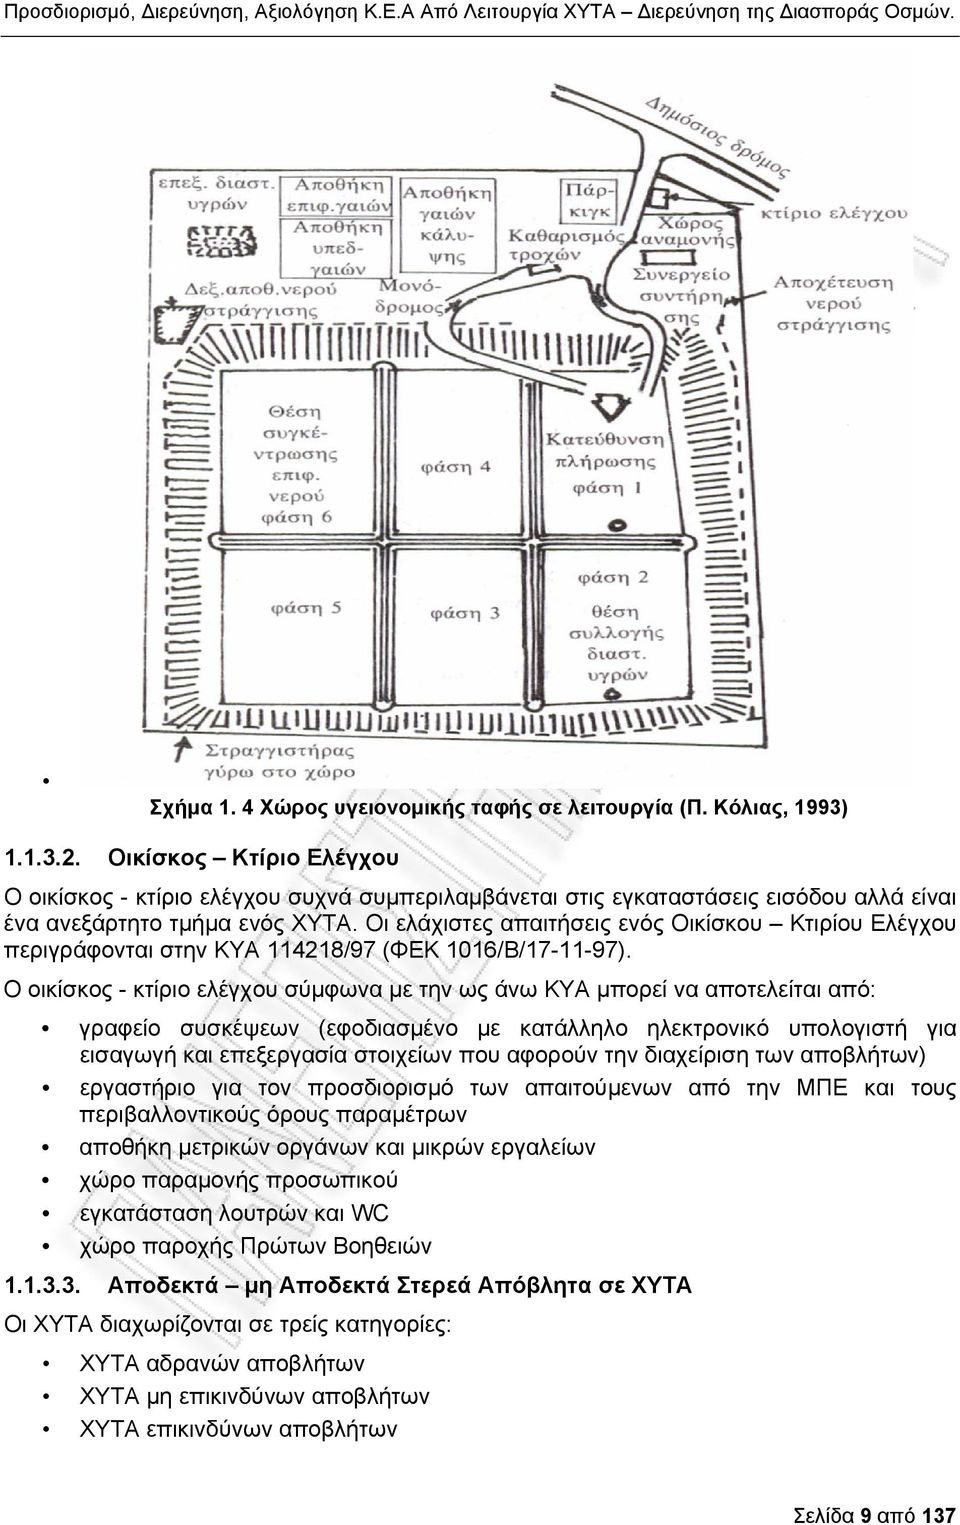 Οι ελάχιστες απαιτήσεις ενός Οικίσκου Κτιρίου Ελέγχου περιγράφονται στην ΚΥΑ 114218/97 (ΦΕΚ 1016/Β/17-11-97).